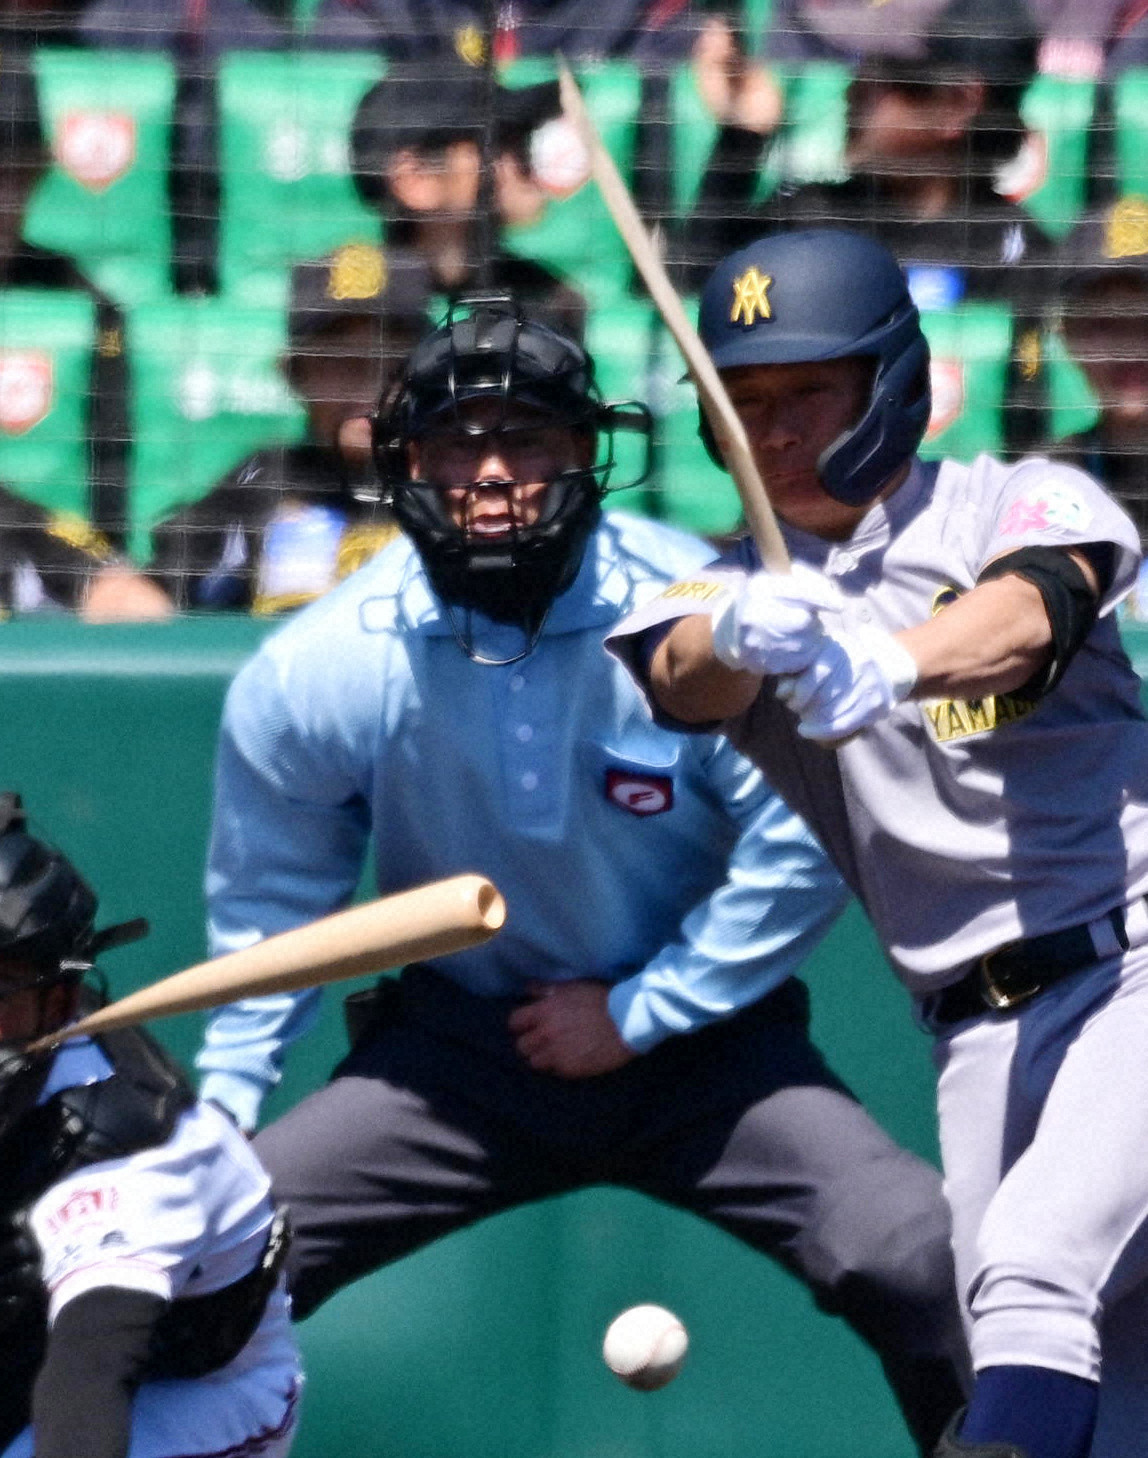 青森山田の選手の木製バット折れる 高校野球で珍場面 センバツ 